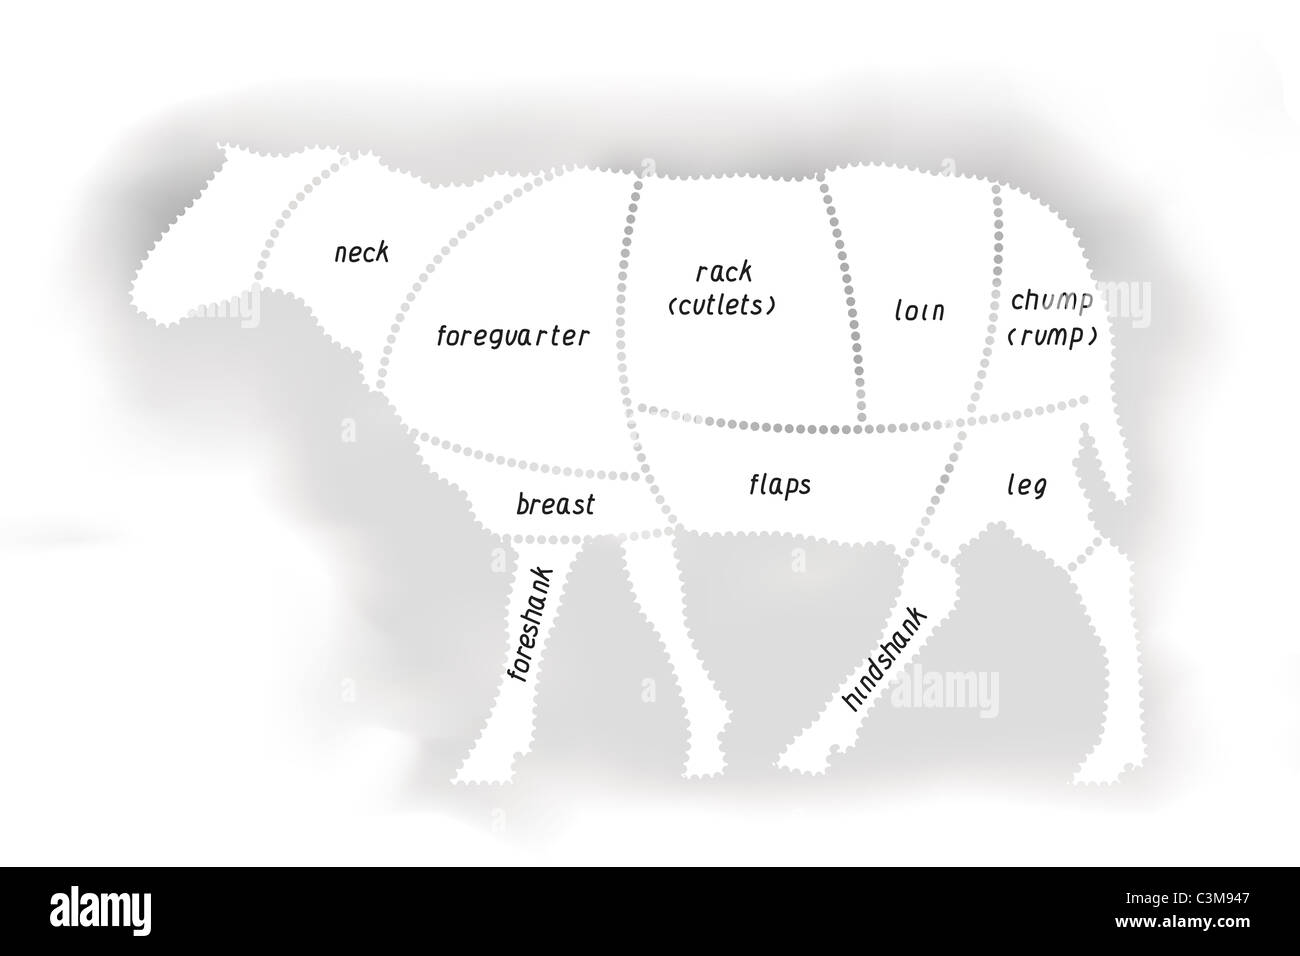 Lamb Meat Diagram Stock Photo